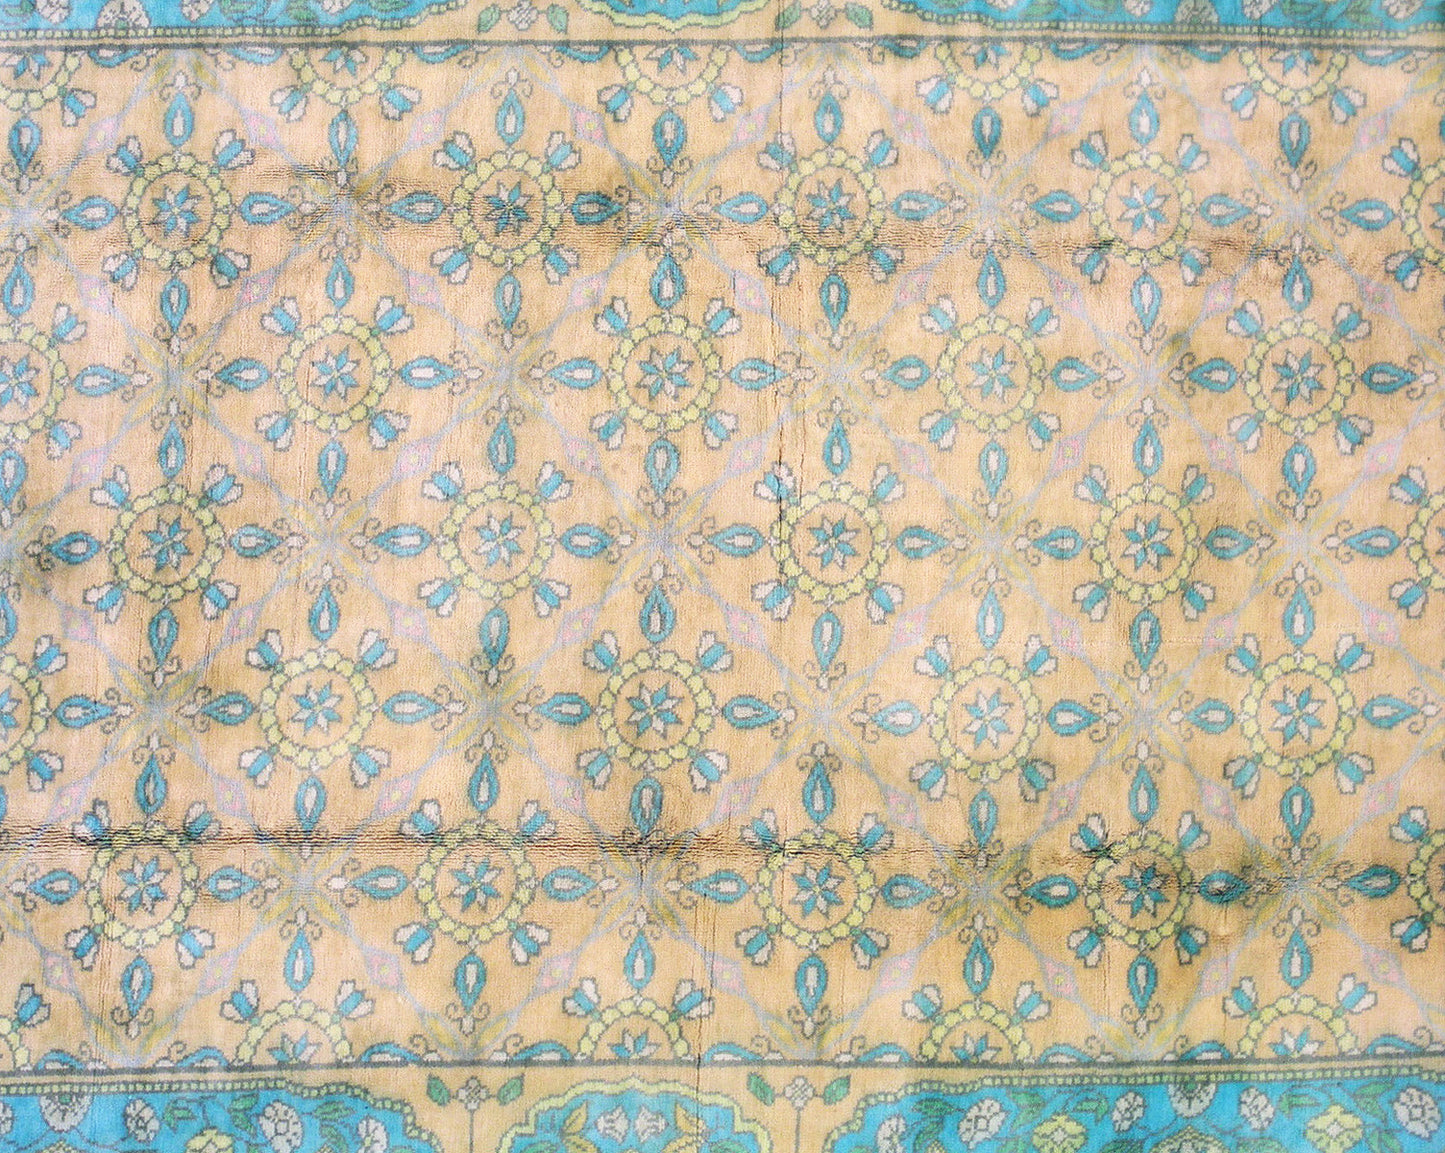 6X9 Antique Indian Cotton Agra Rug, circa 1930